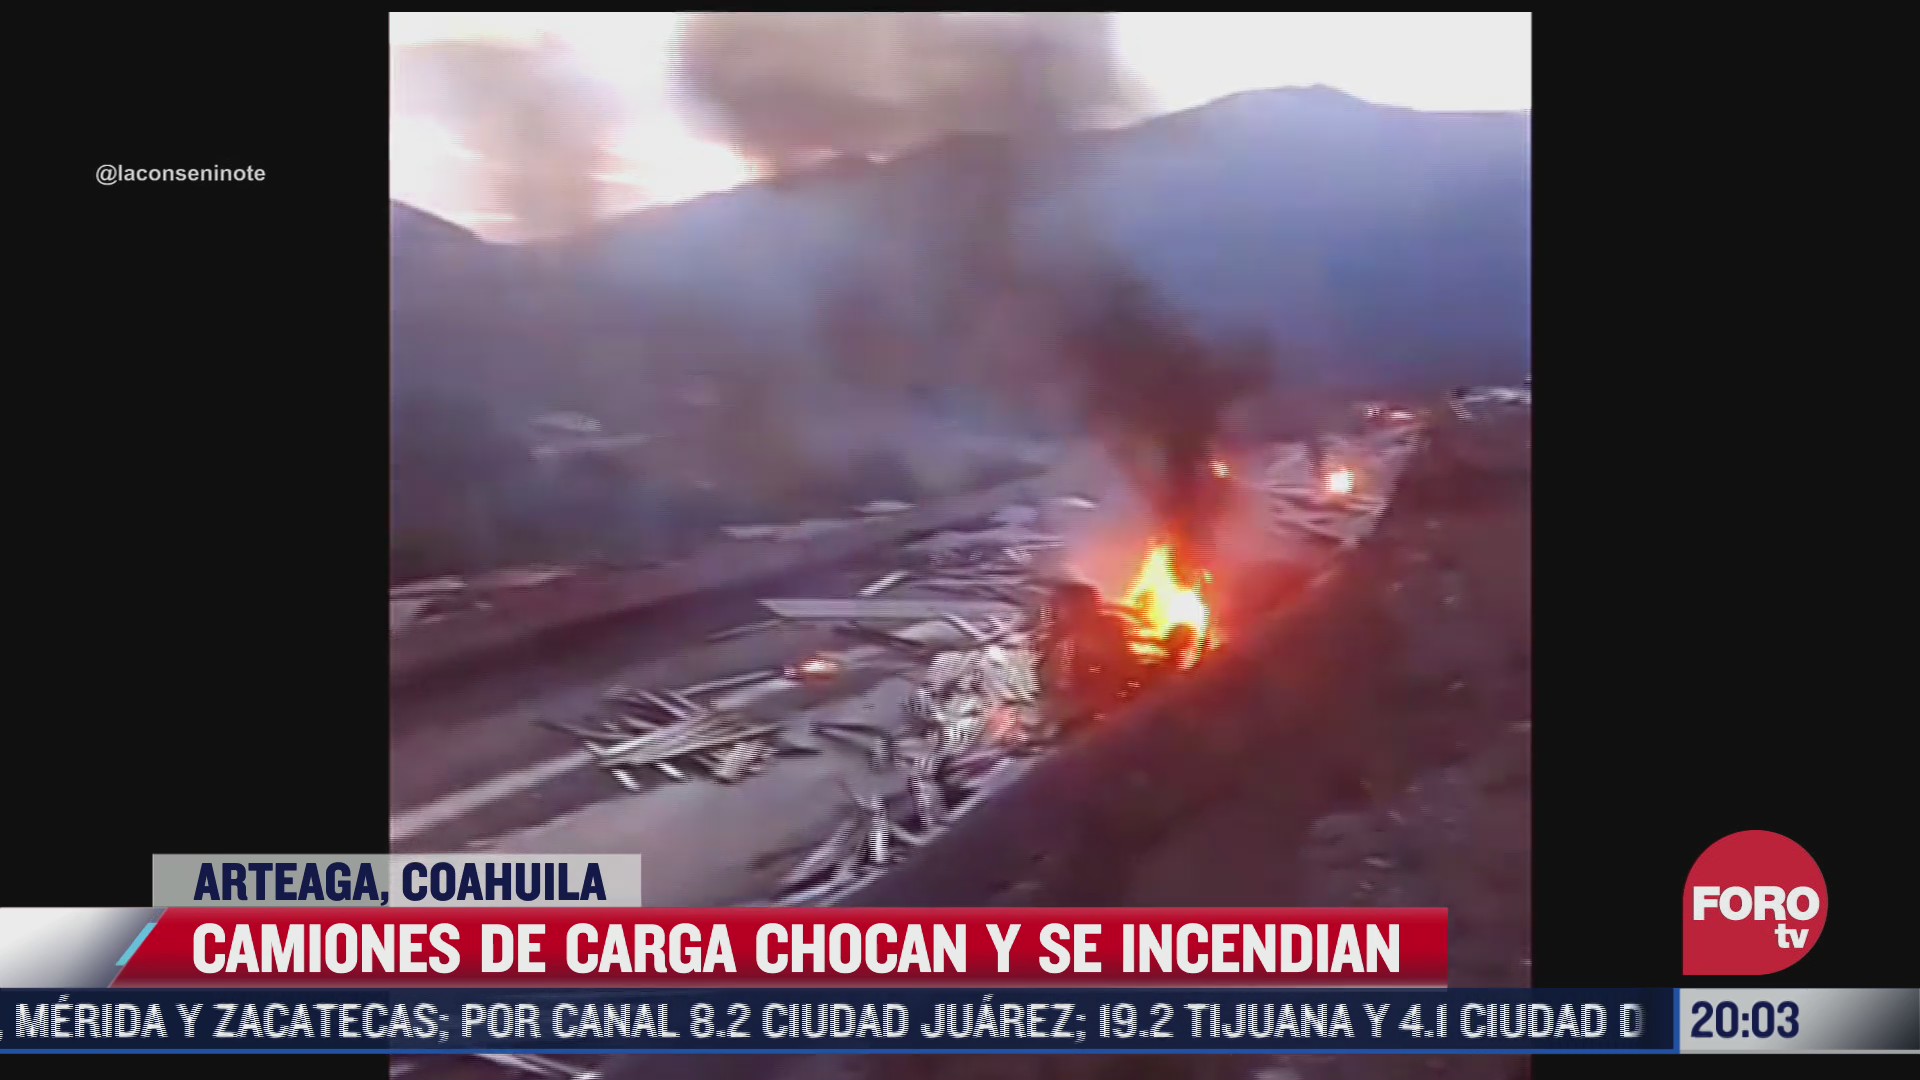 camiones de cargas chocan y se incendian en arteaga coahuila